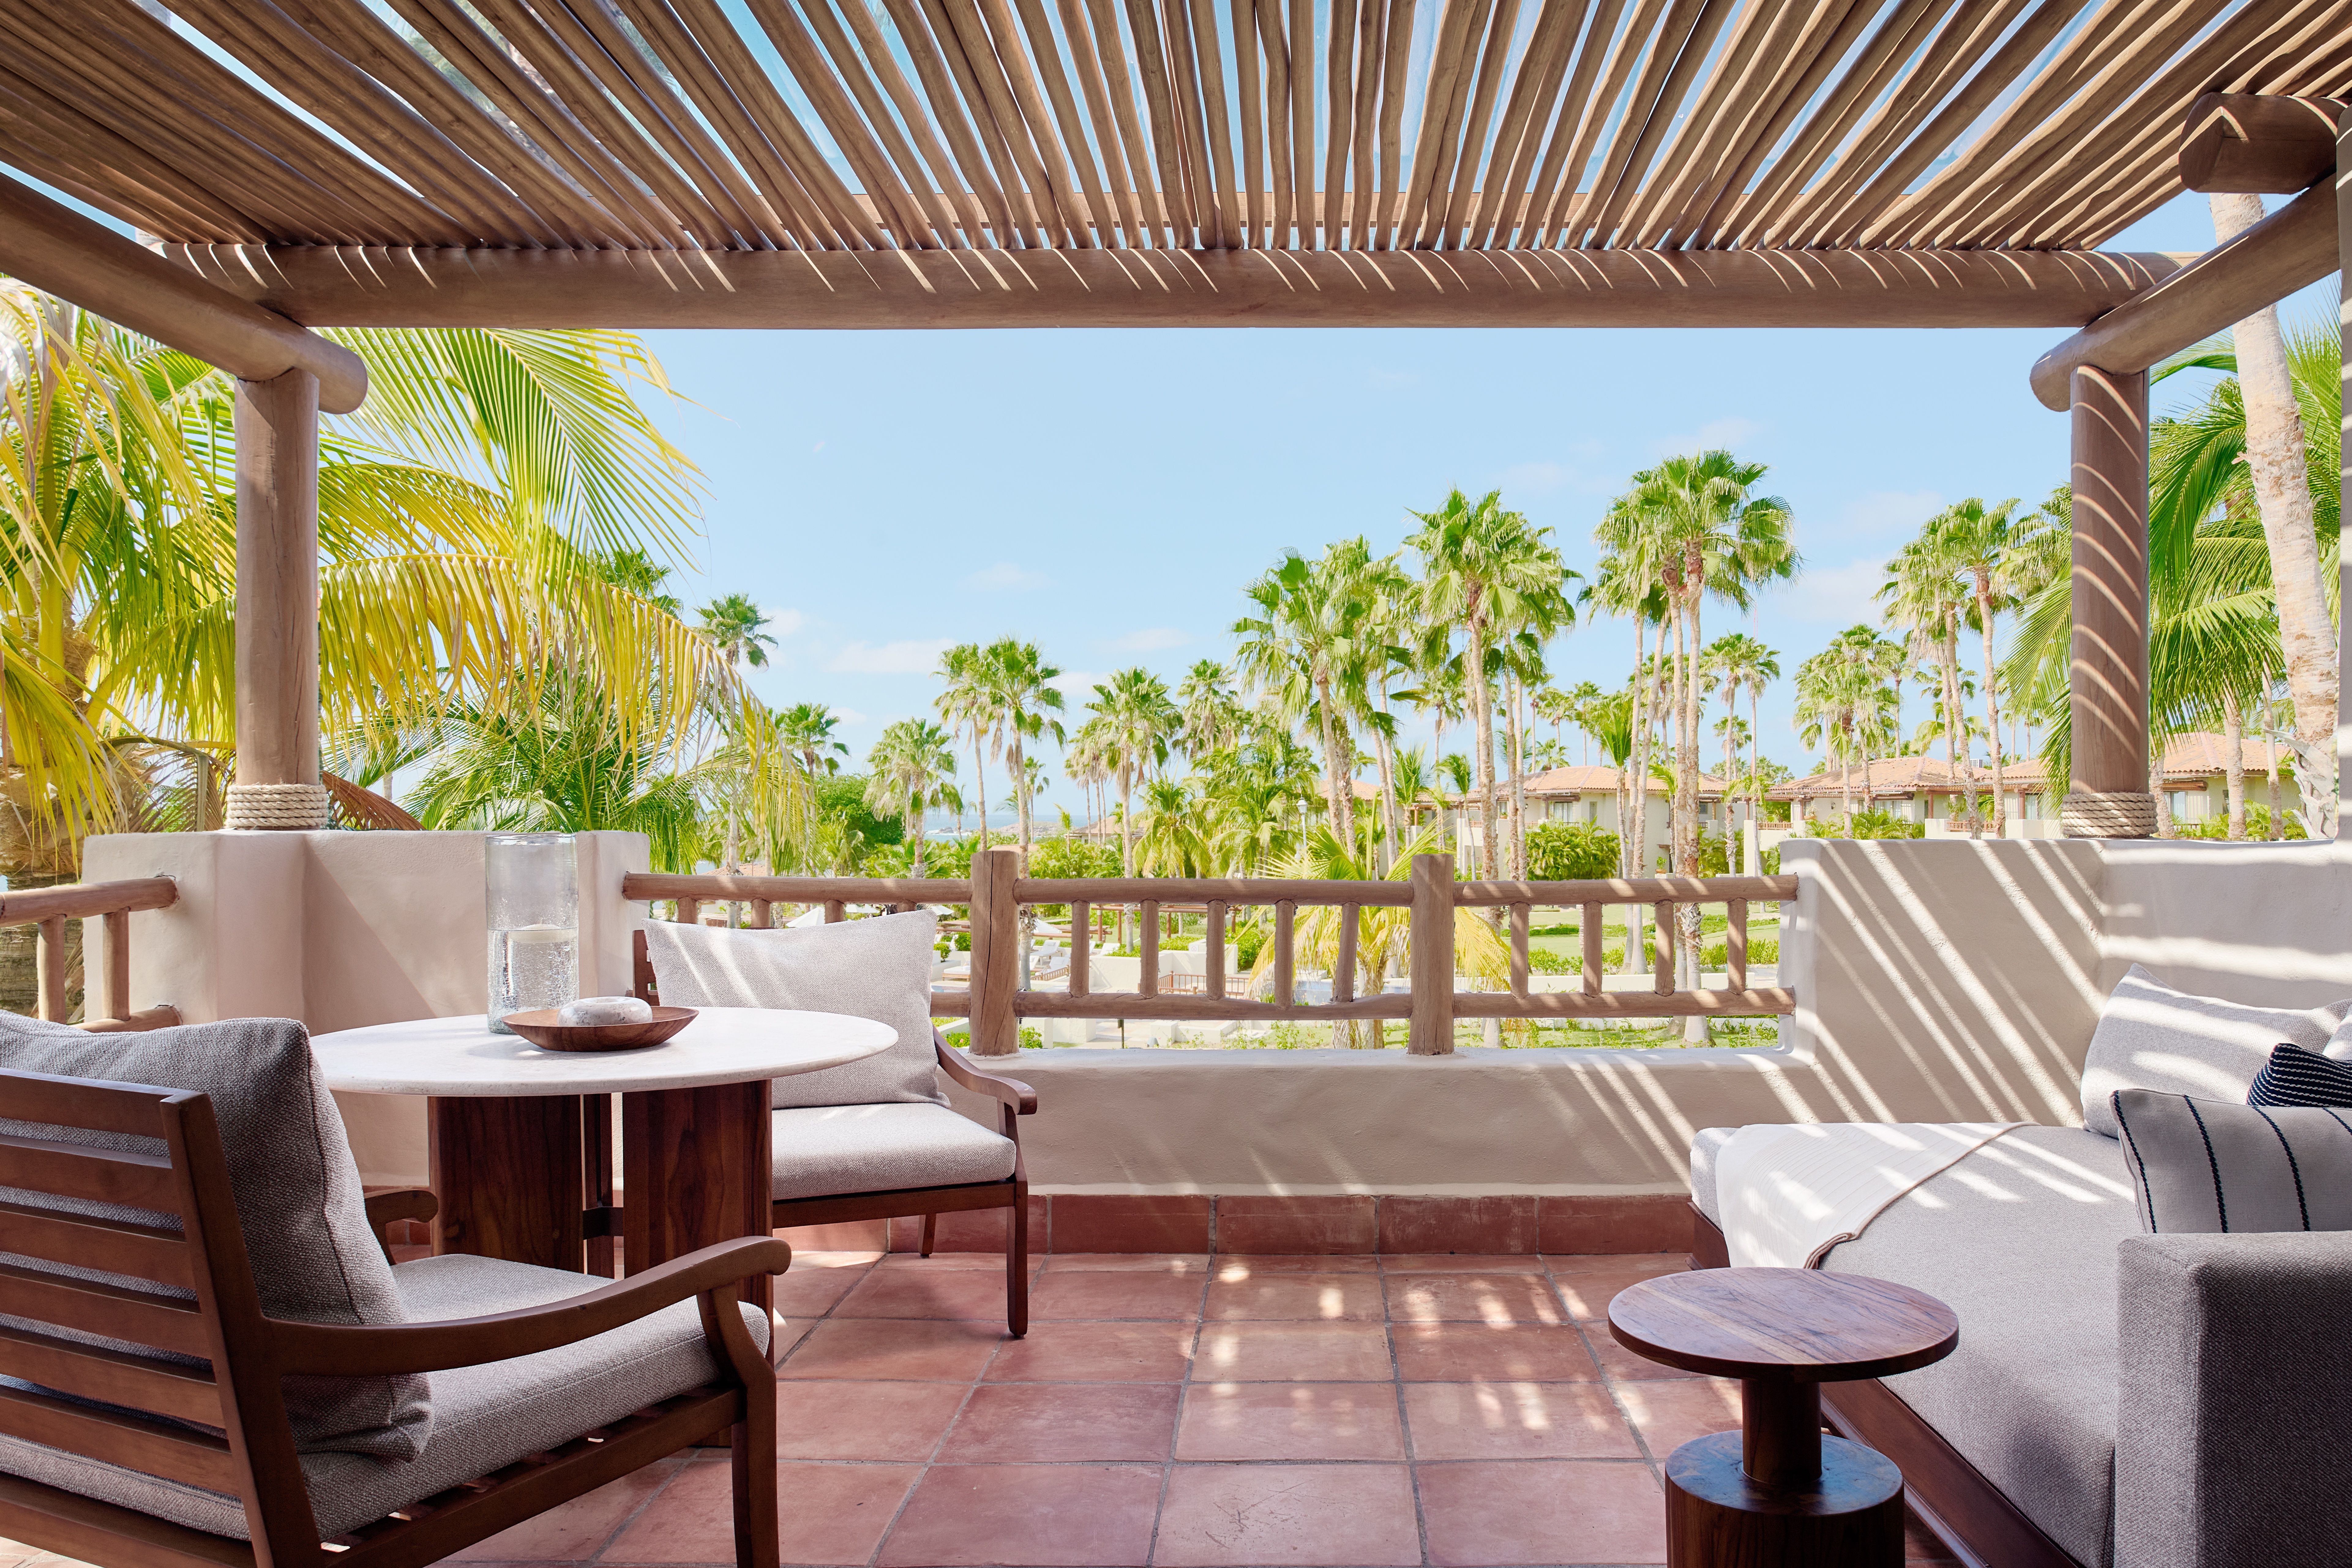 Grand Deluxe Ocean View King Room at The St. Regis Punta Mita Resort, Nayarit, MX